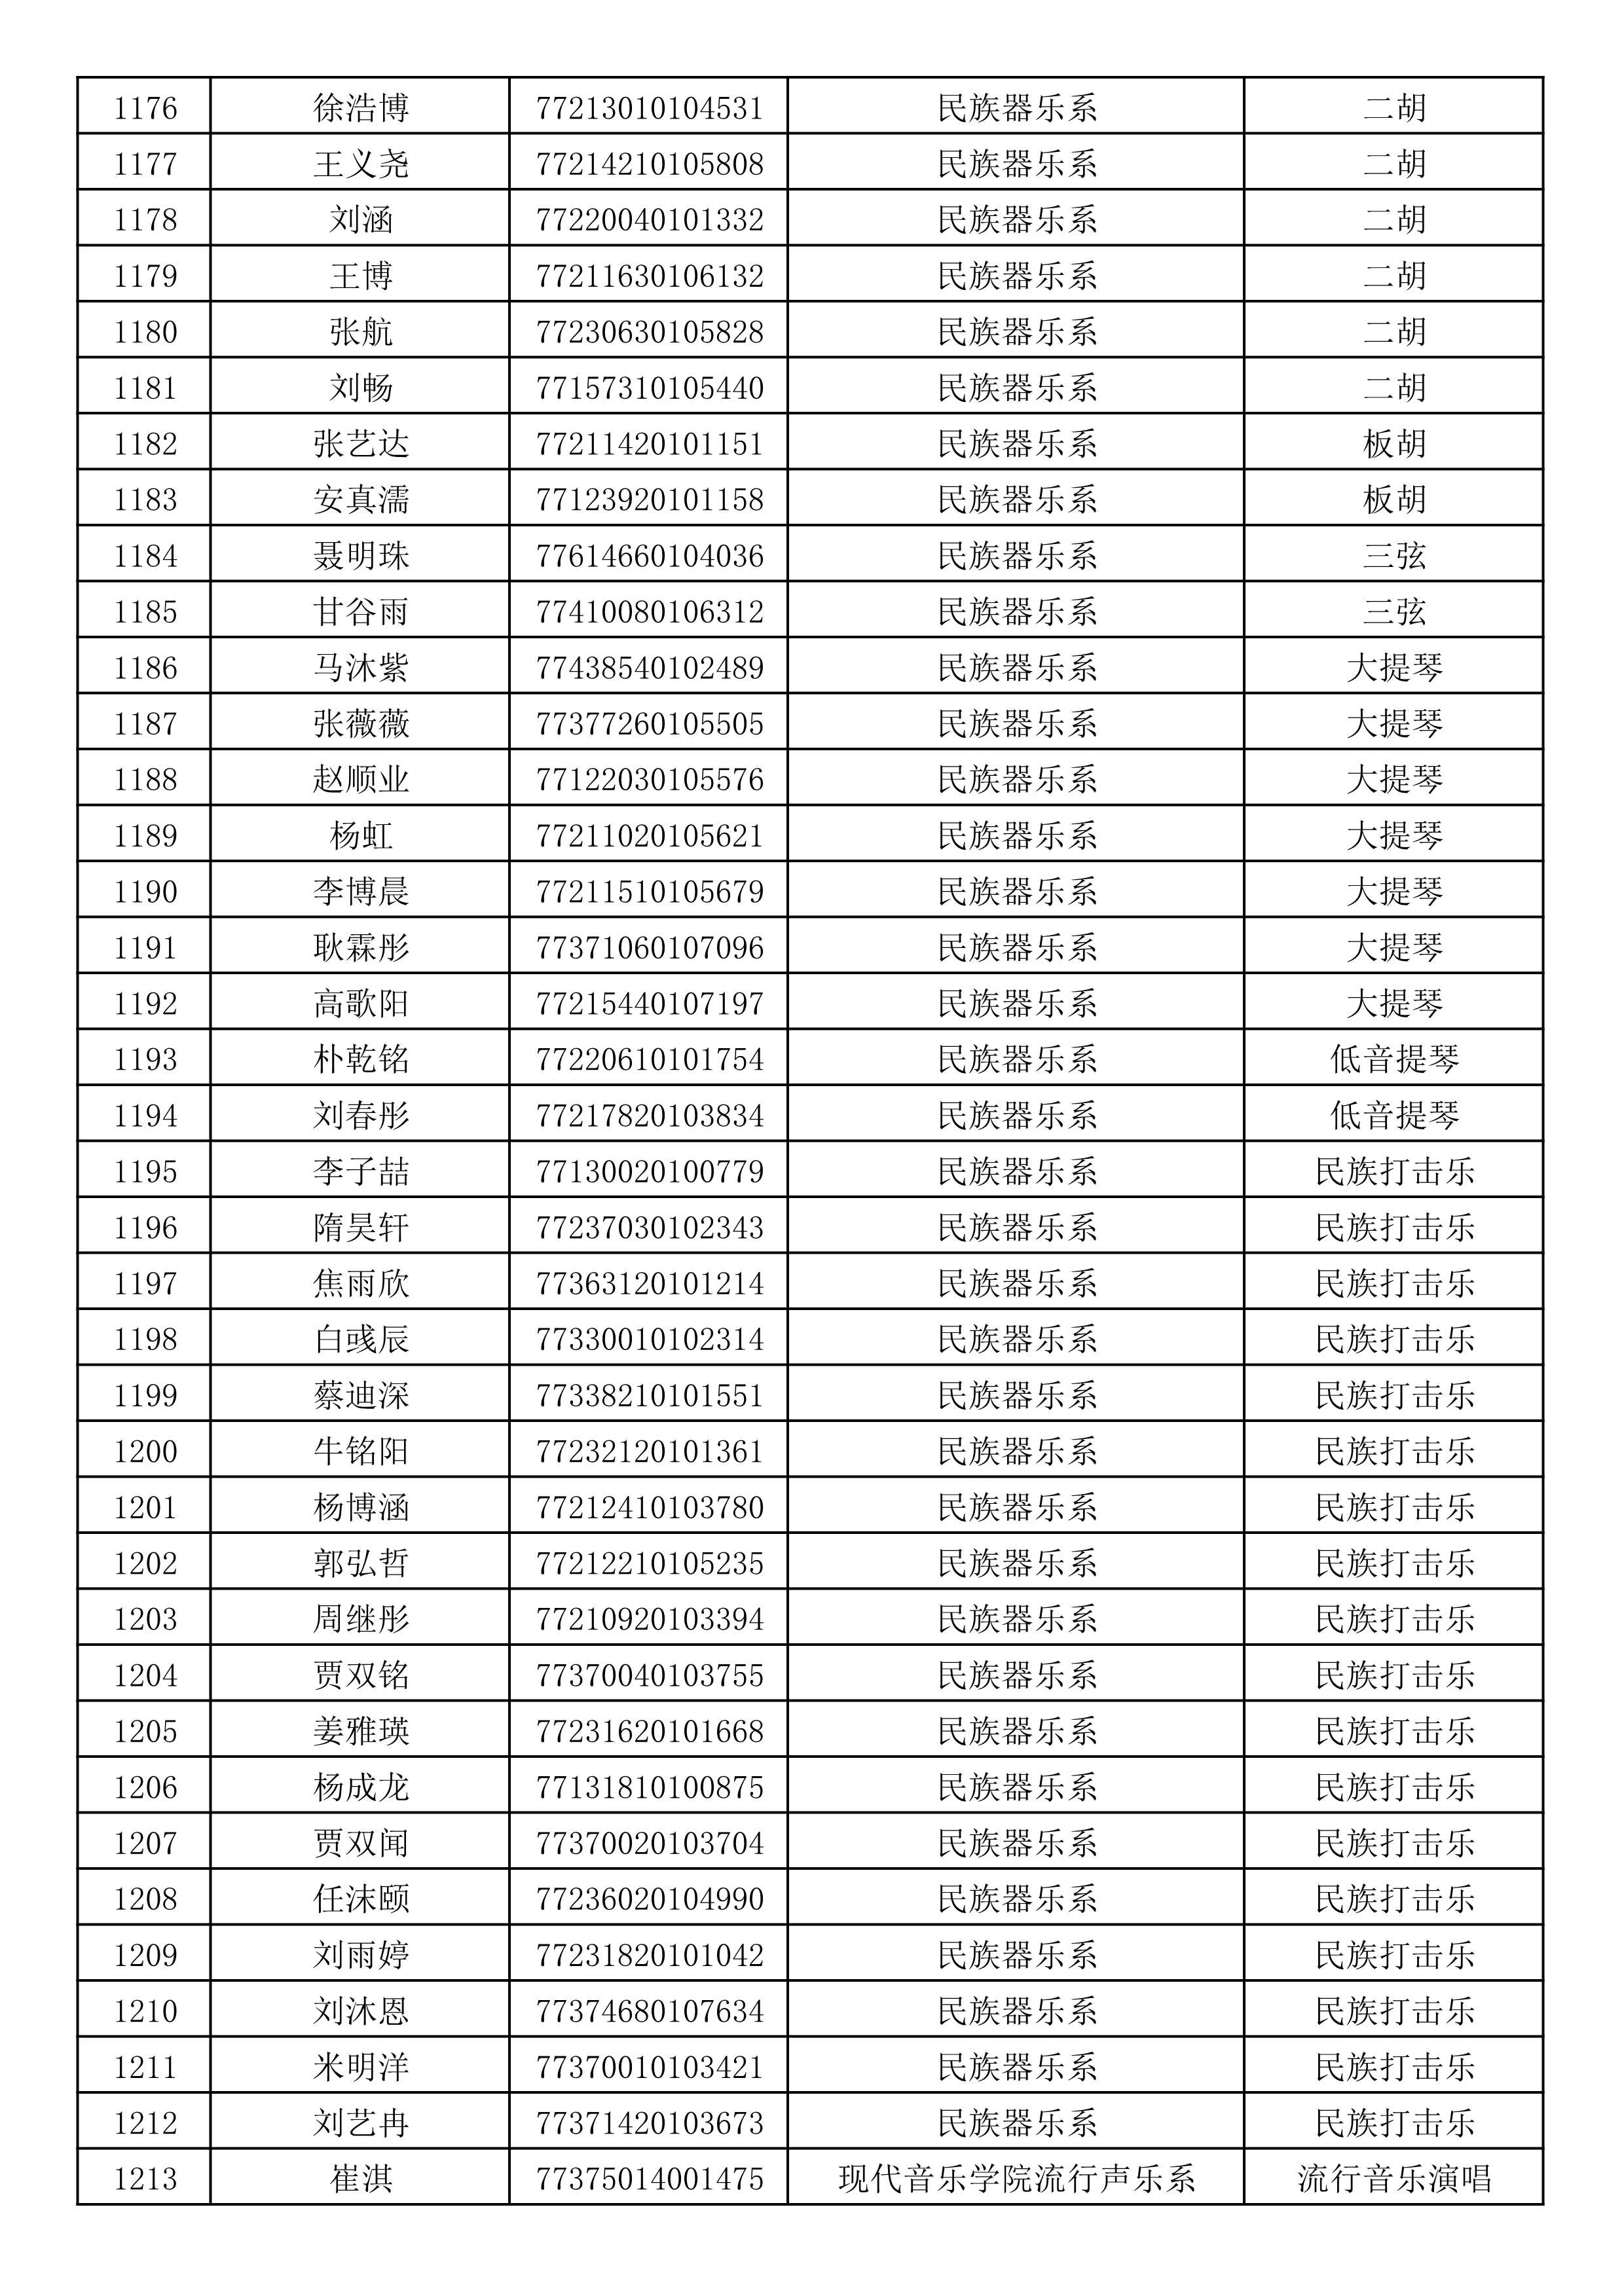 沈阳音乐学院2019年本科招生考试初试合格名单_32.jpg